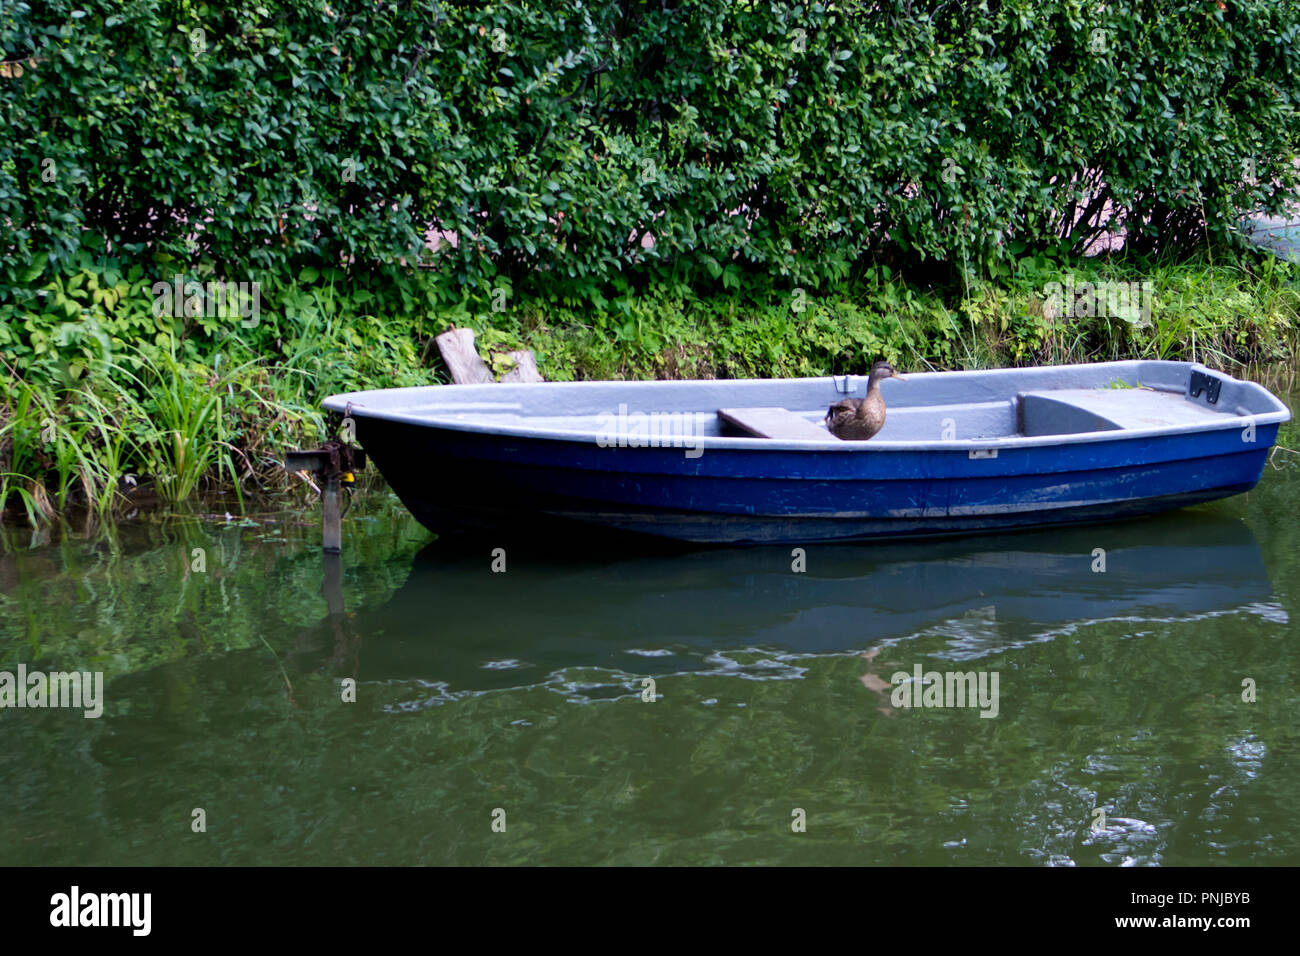 Solo viejo barco azul con gracioso pato a bordo amarrado en un verdes matorrales en un turbio estanque Foto de stock